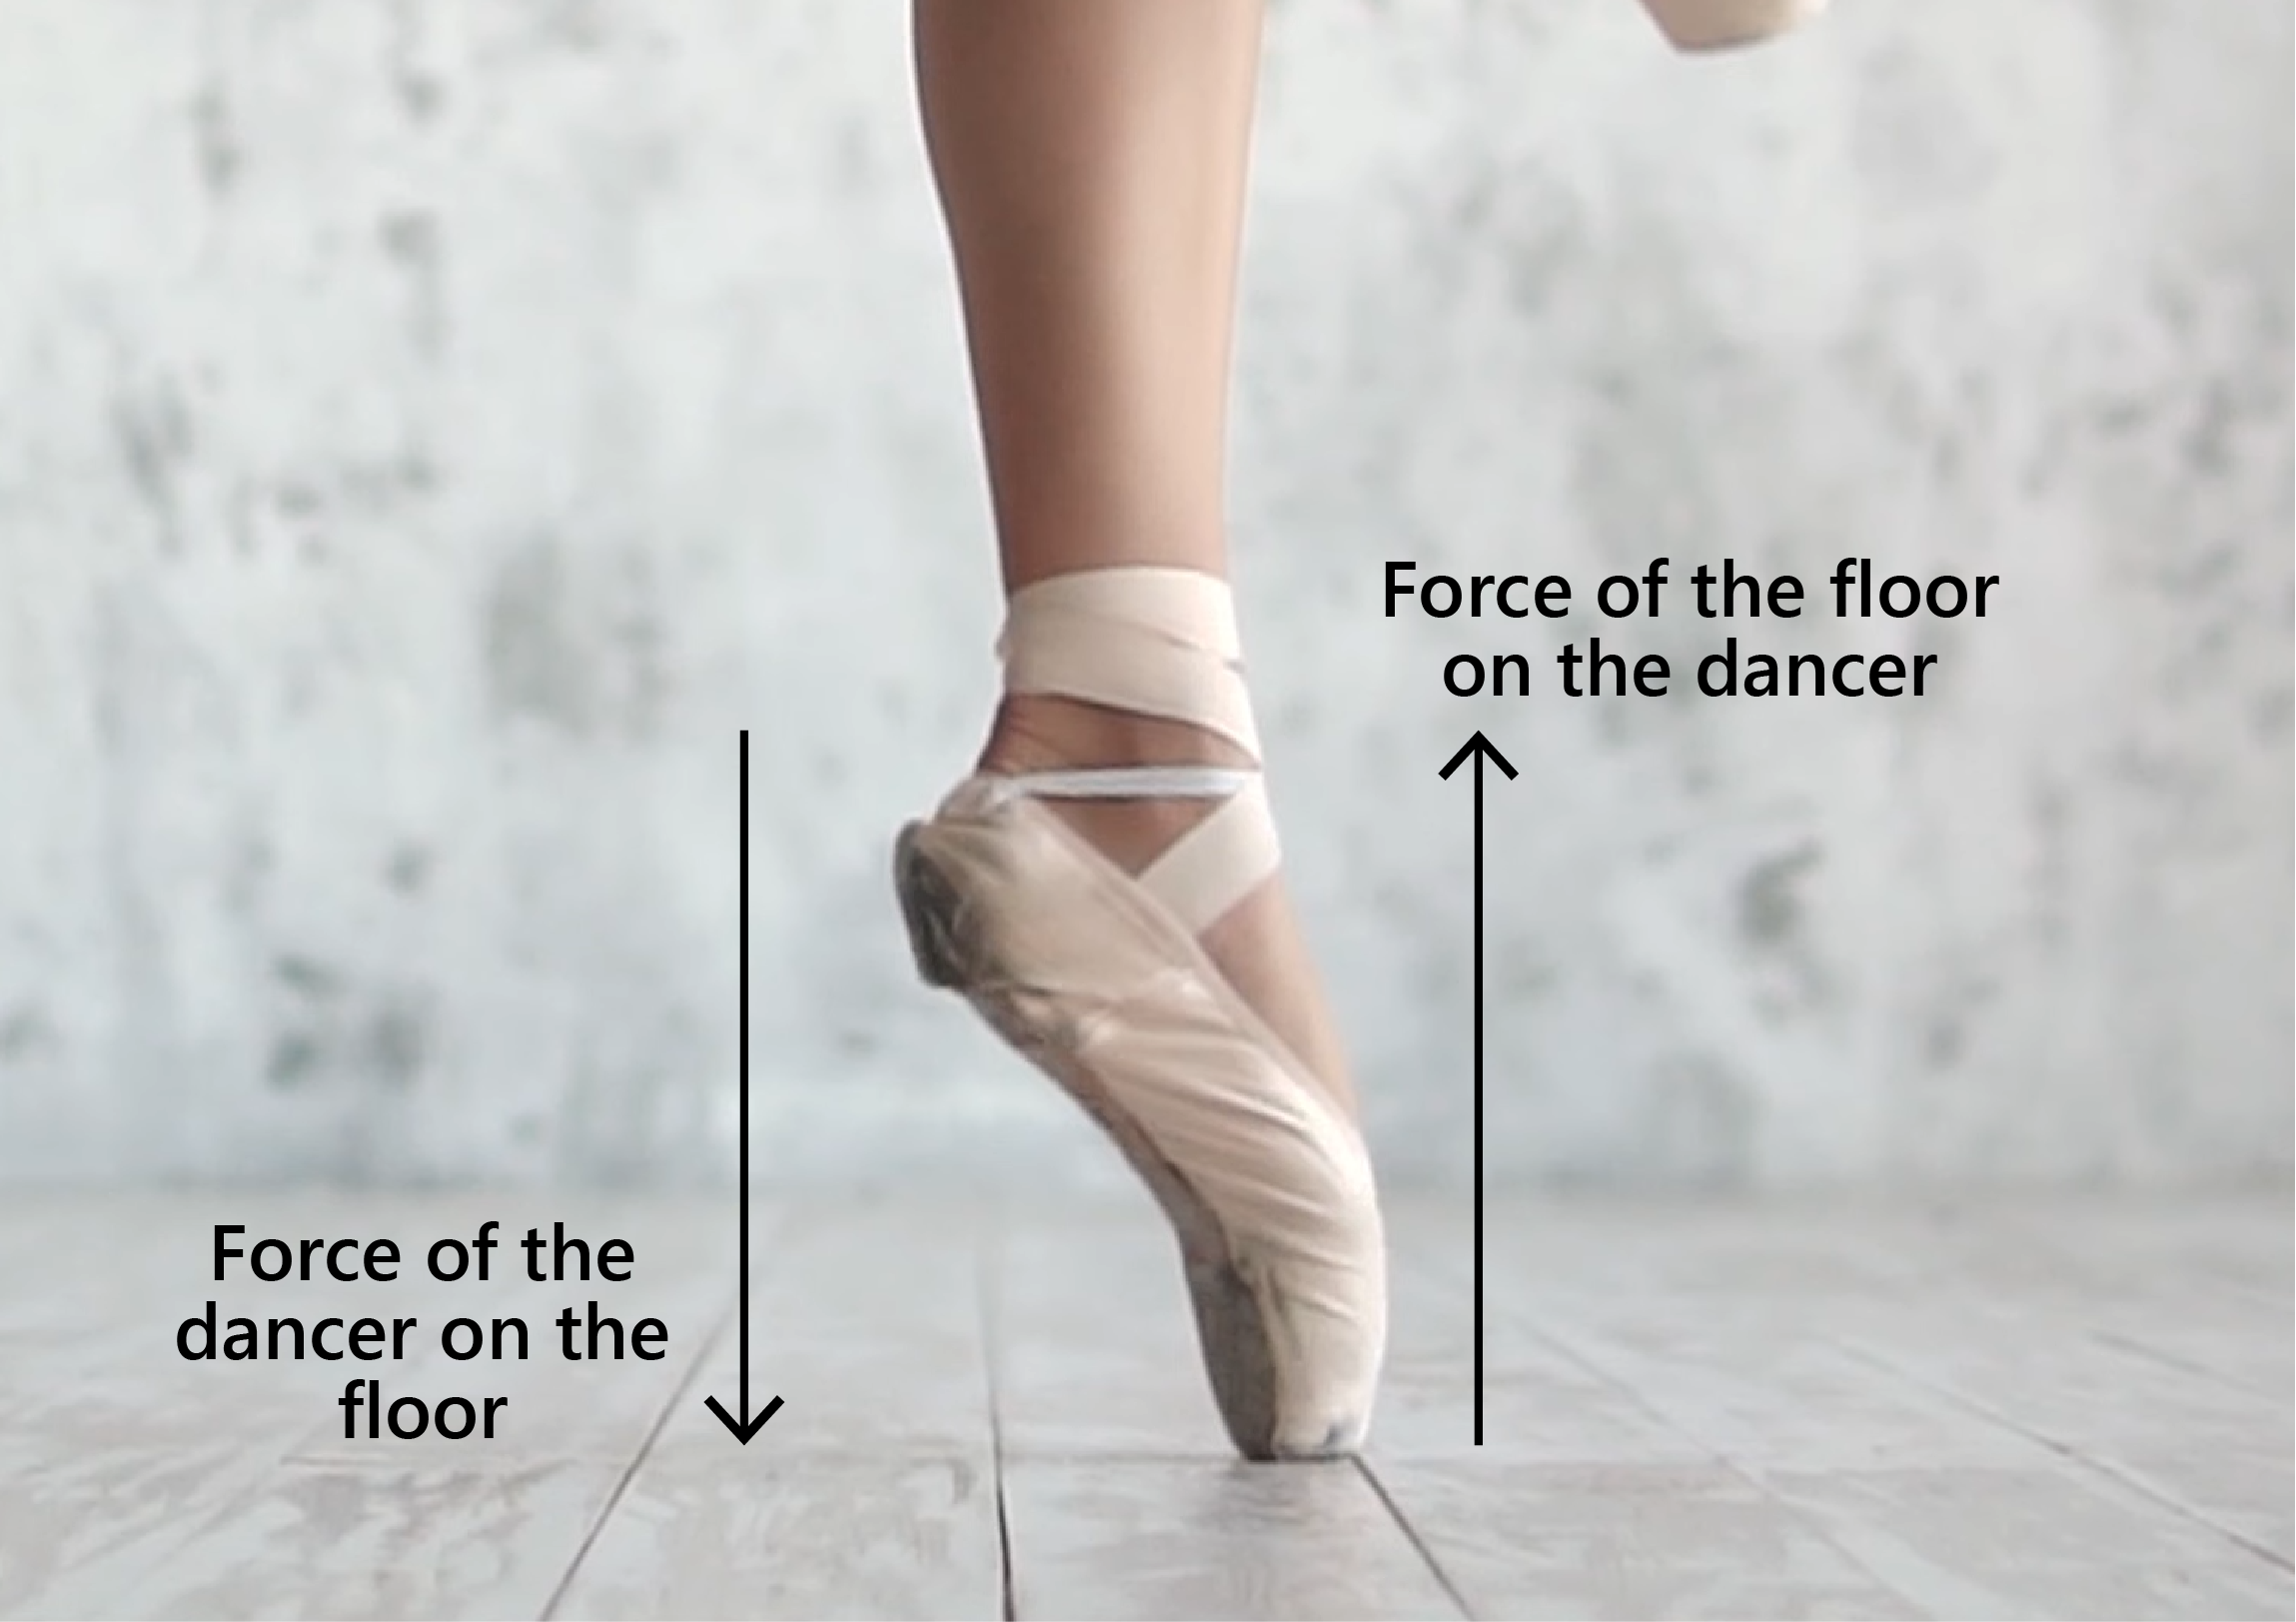 Forces between dancer and floor